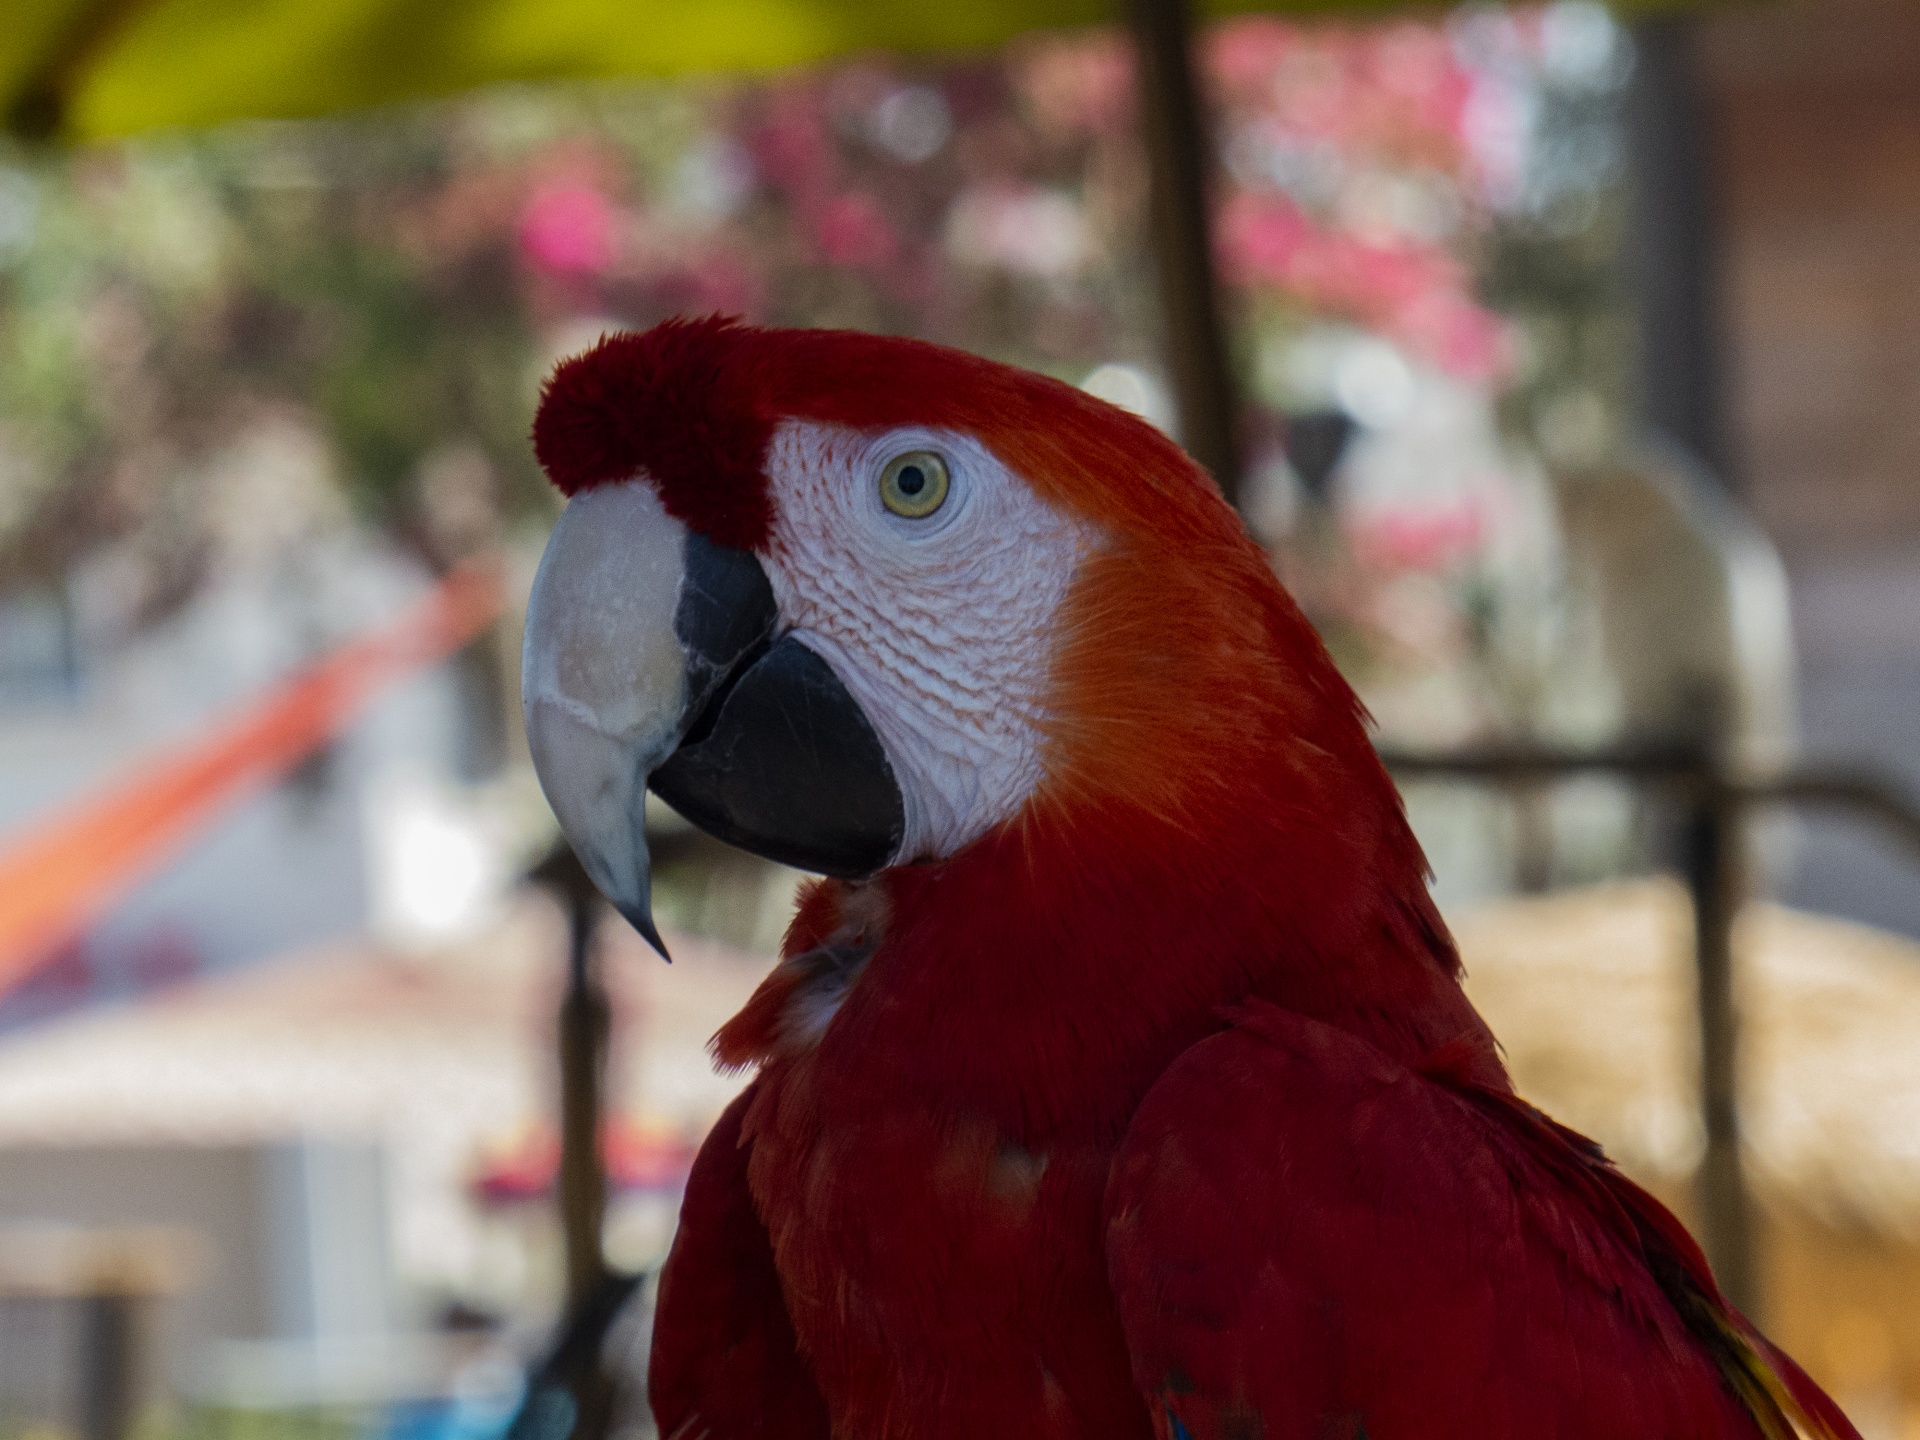 Red Parrot Portrait Free Stock Photo Public Domain Pictures